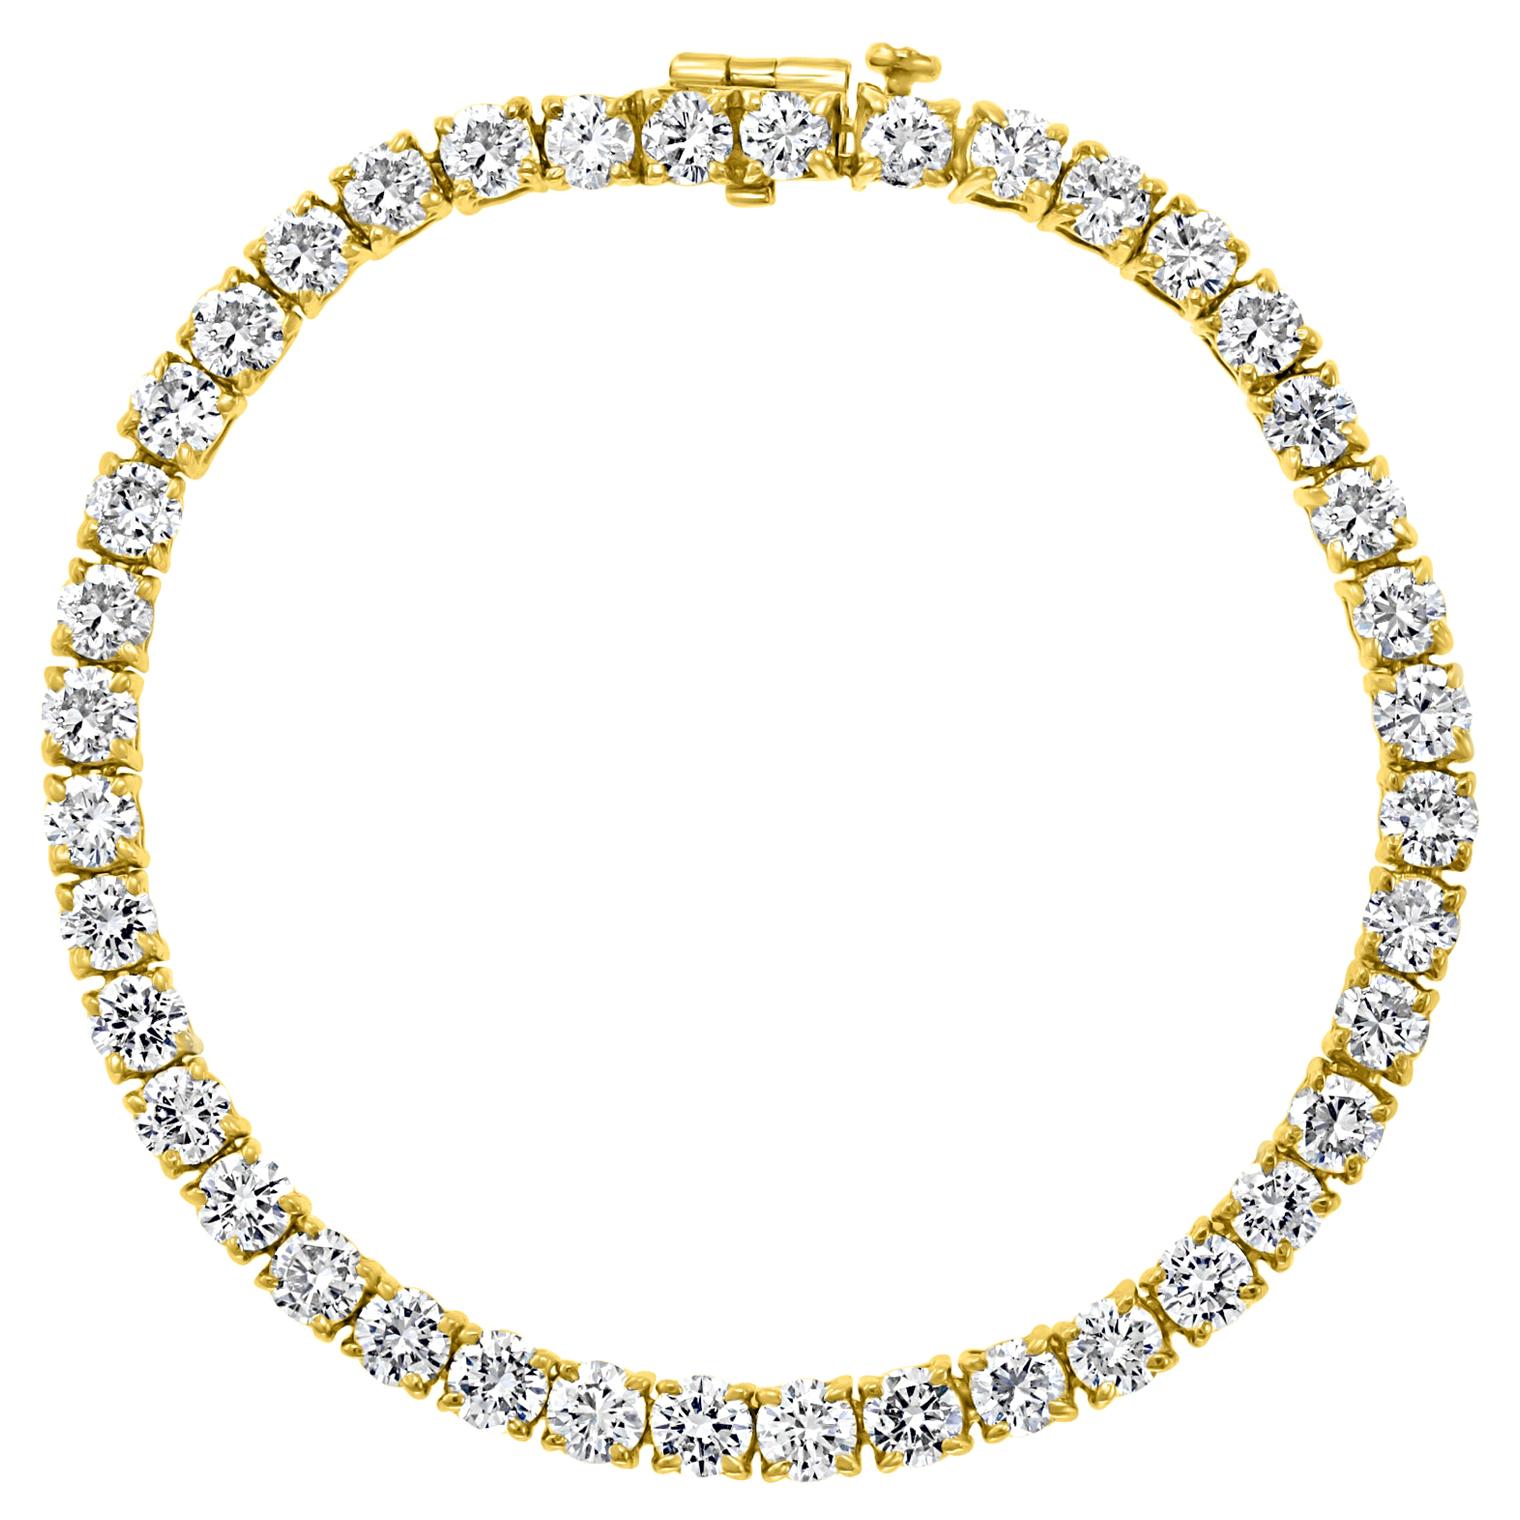 40 Round Diamond 25 Pointer Each Tennis Bracelet in 18 Karat Gold 10 Carat, Best